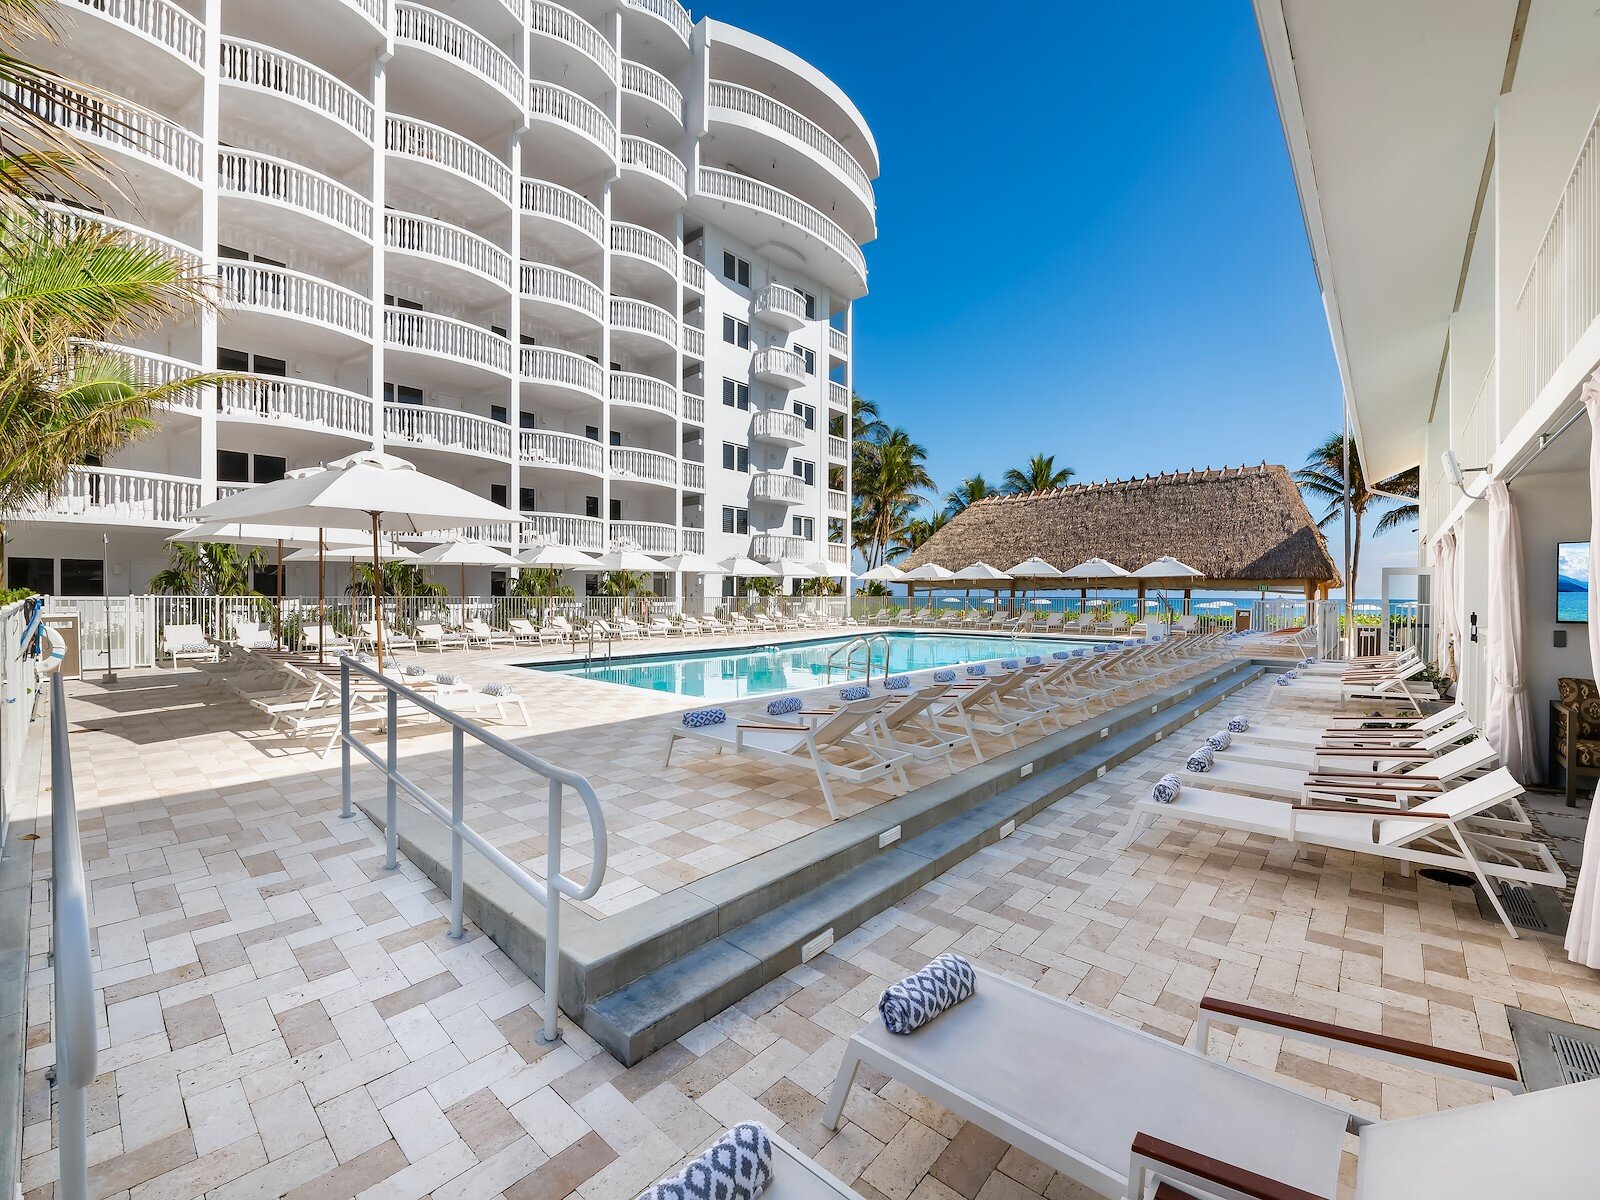 Day Pass & Cabana Rentals | Beachcomber Resort & Club